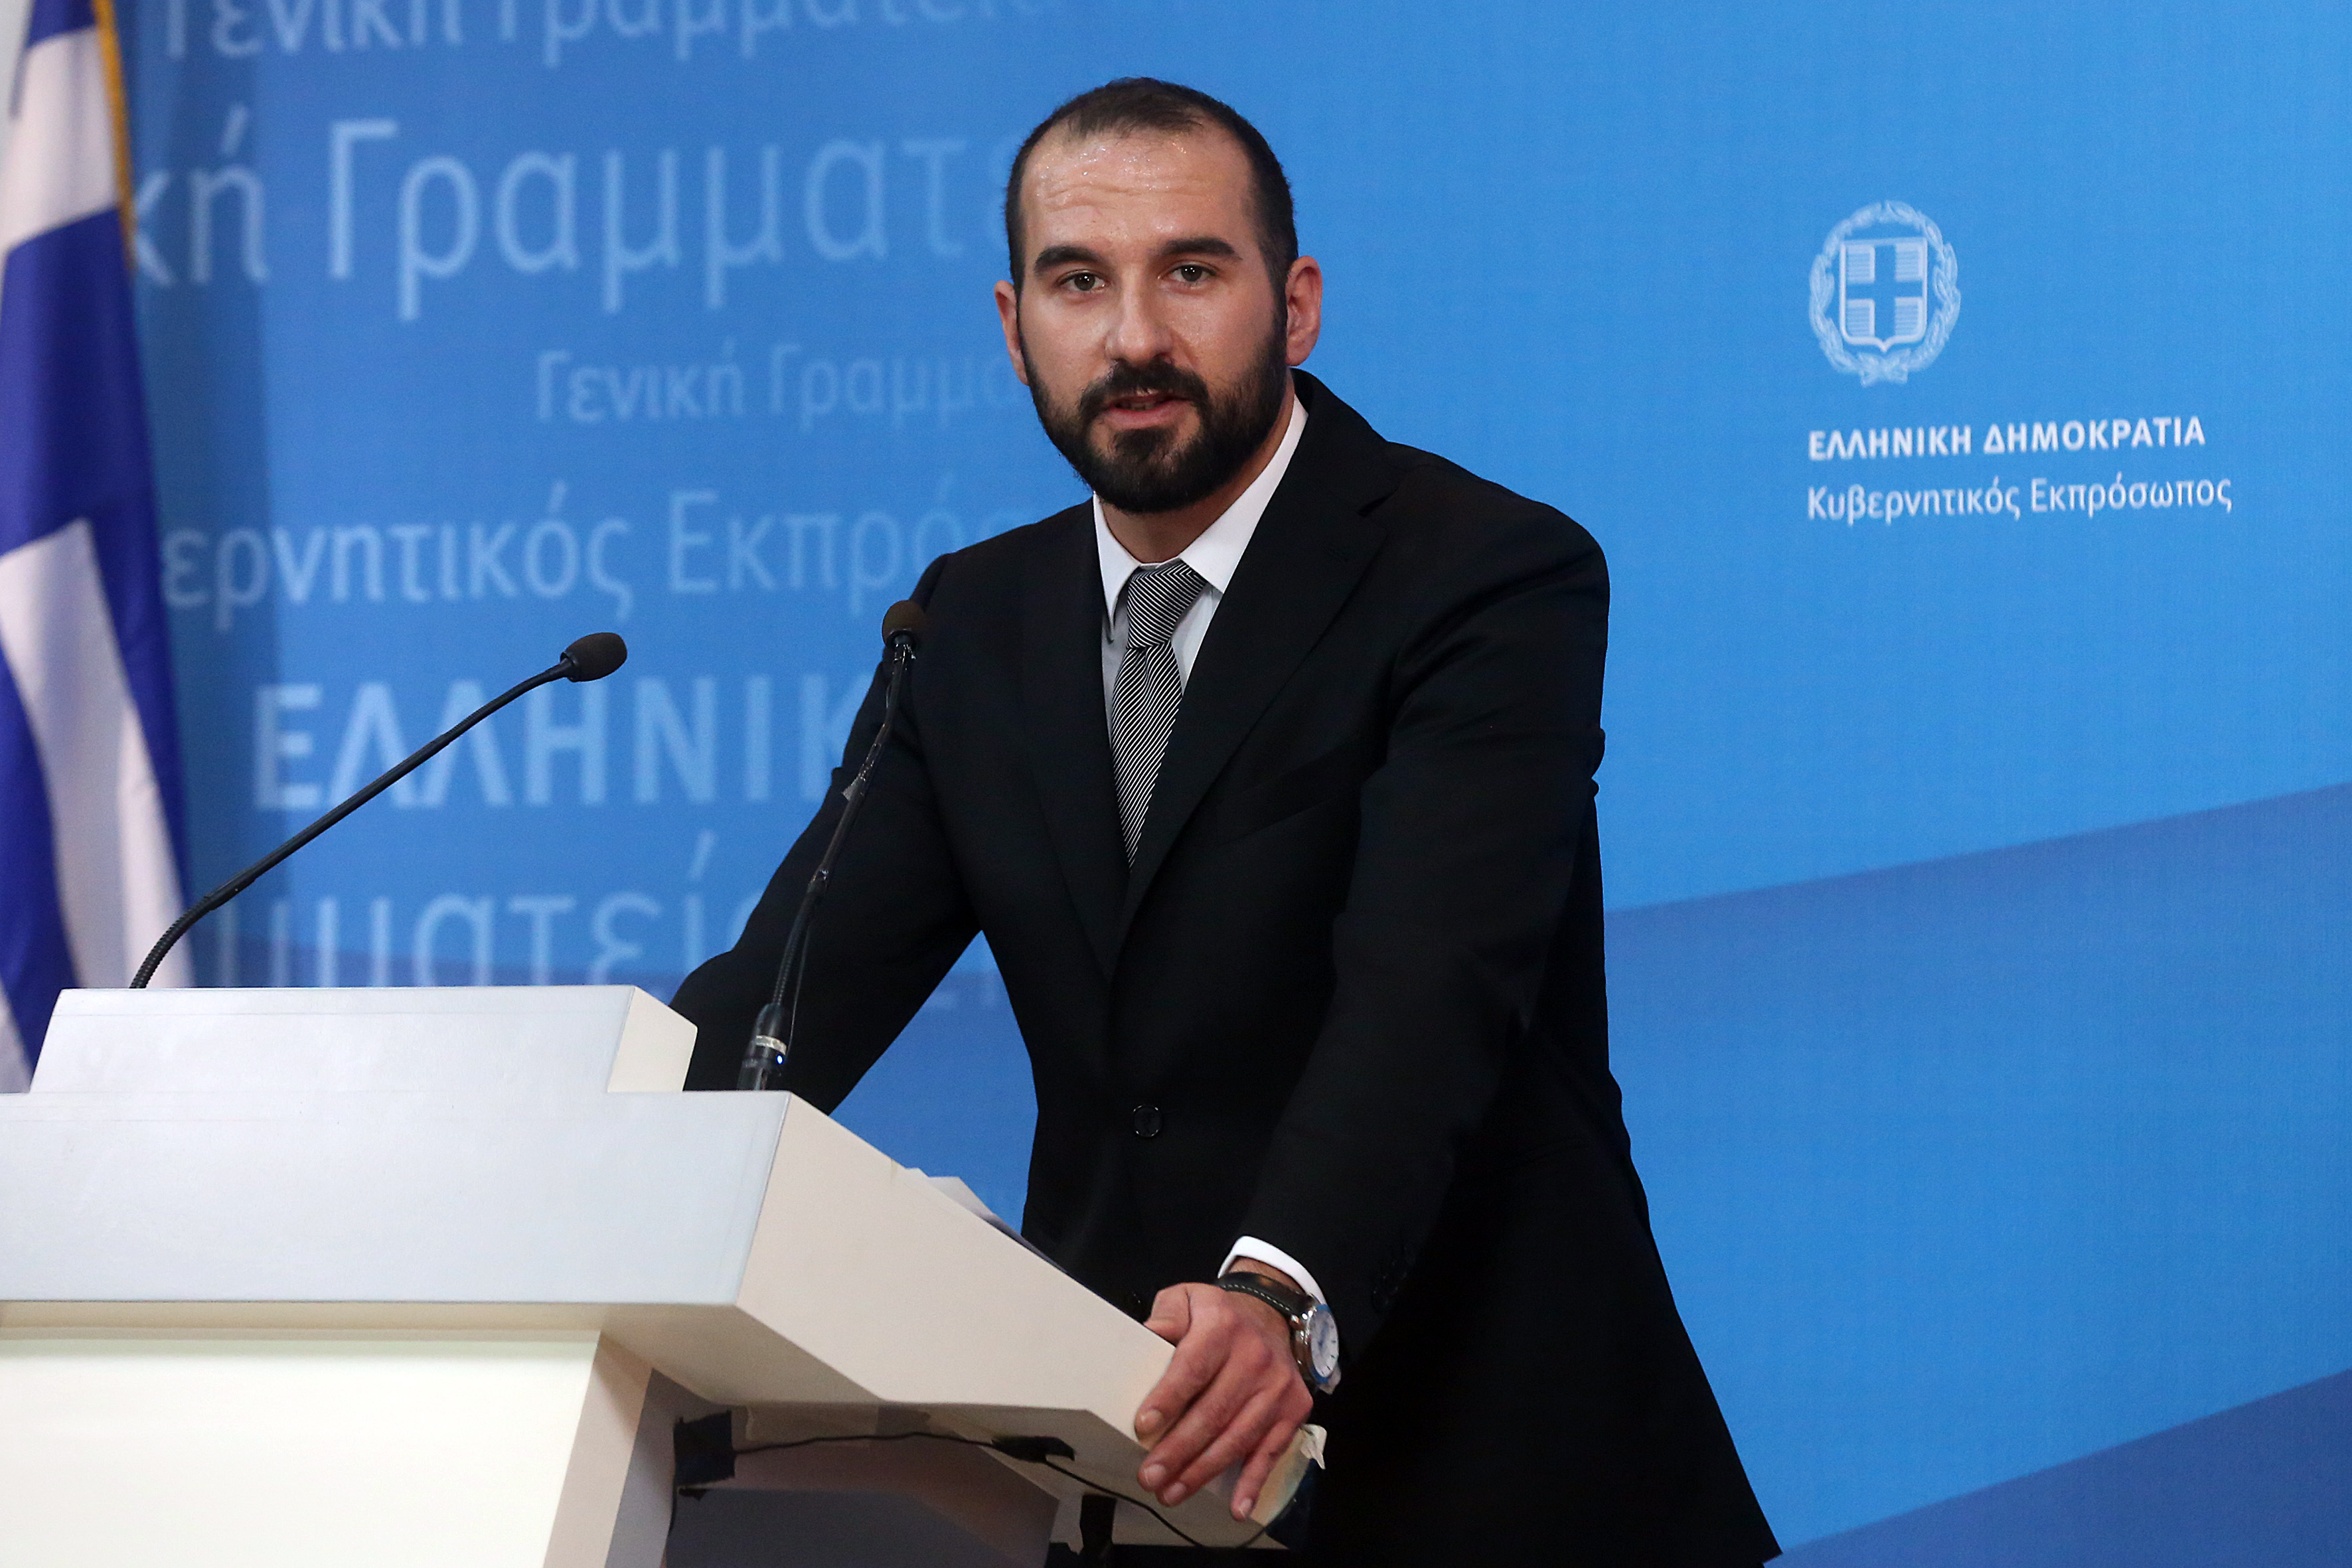 Δ. Τζανακόπουλος: Θετικό το μομέντουμ της οικονομίας και θέλουμε να το αξιοποιήσουμε